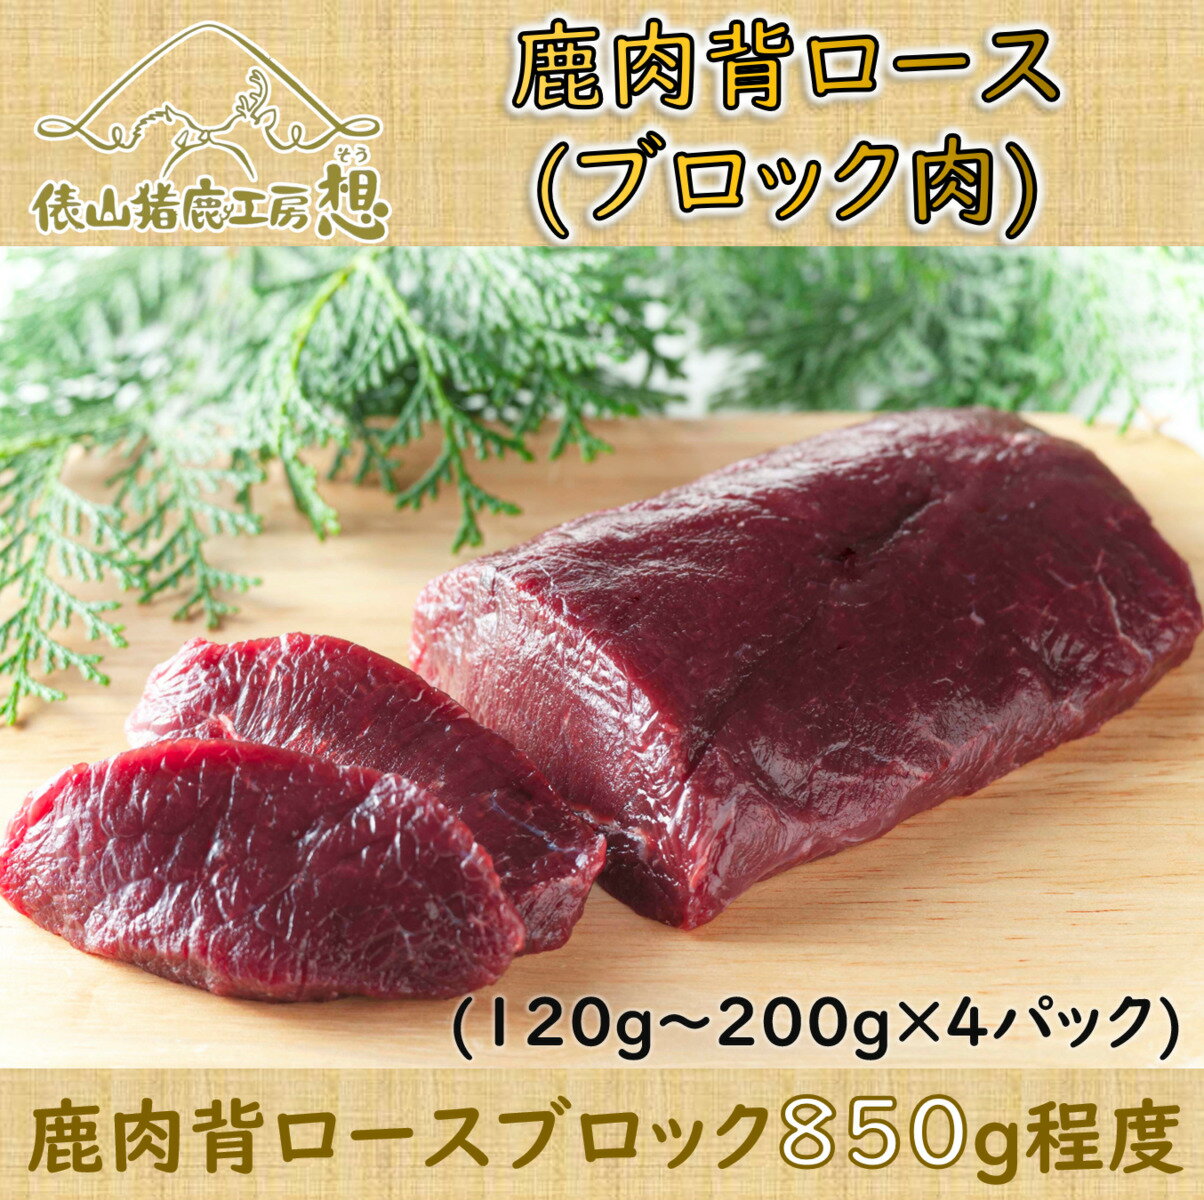 ジビエ 鹿肉 背ロース ブロック肉 「鹿肉背ロース(ブロック肉)850g程度」 精肉 (120g〜200g×4パック) ヘルシー(1046)